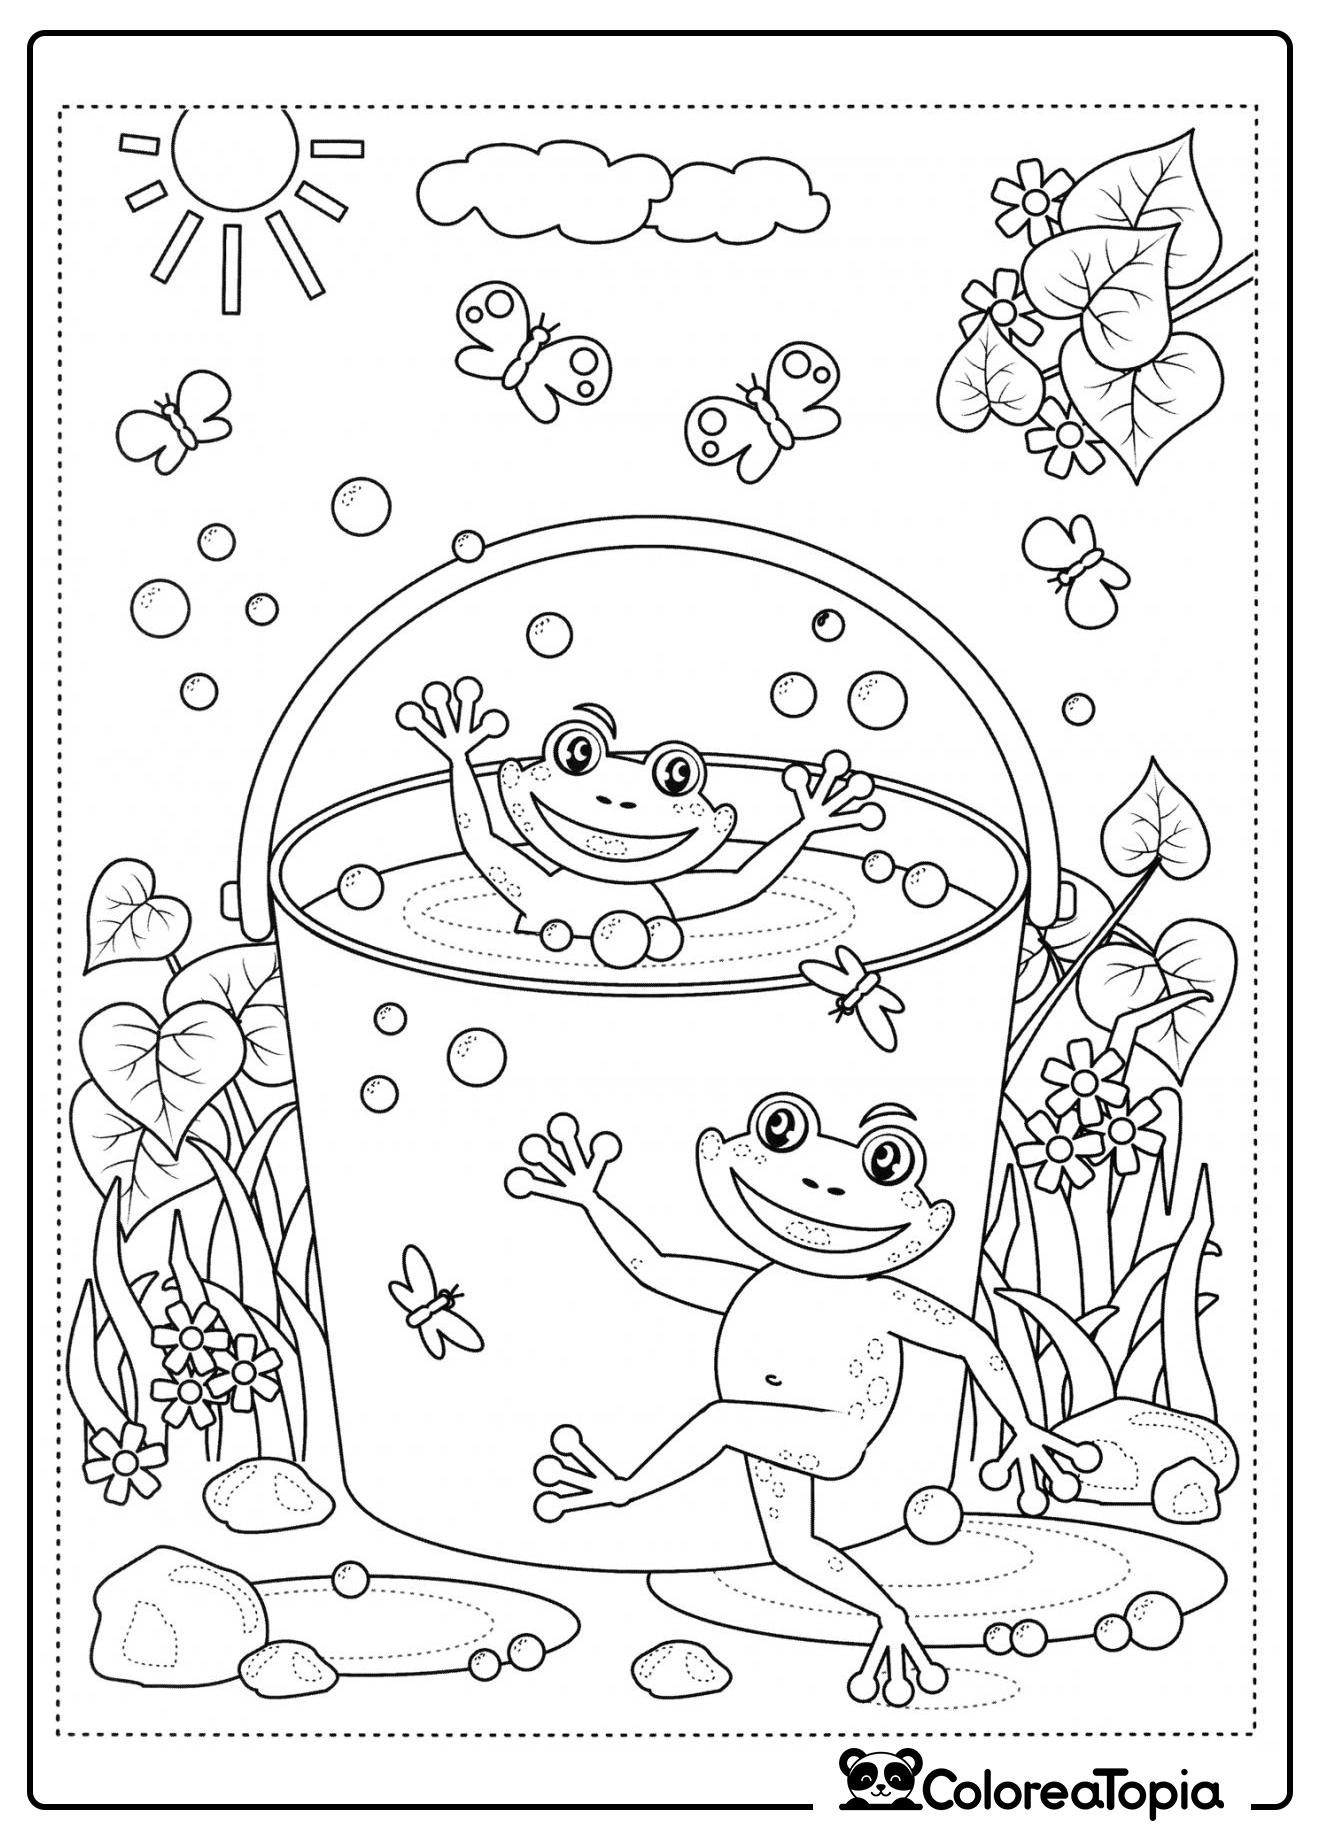 Las ranas se bañan en el cubo - dibujo para colorear